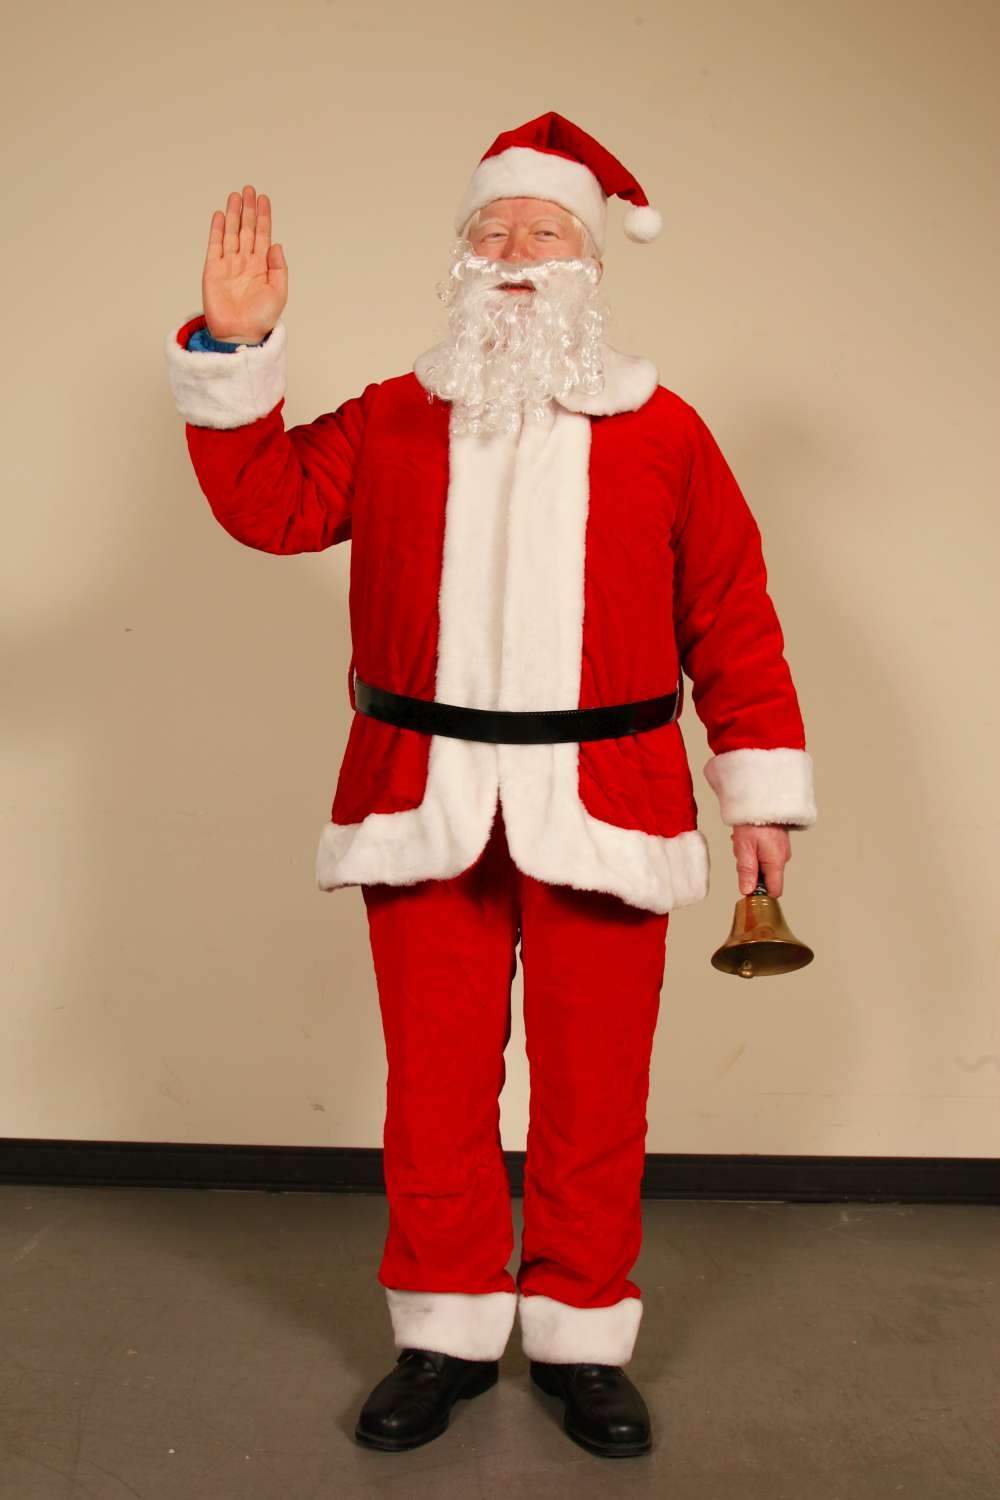 2. 代言人戴耀賽董事長扮成聖誕老人|